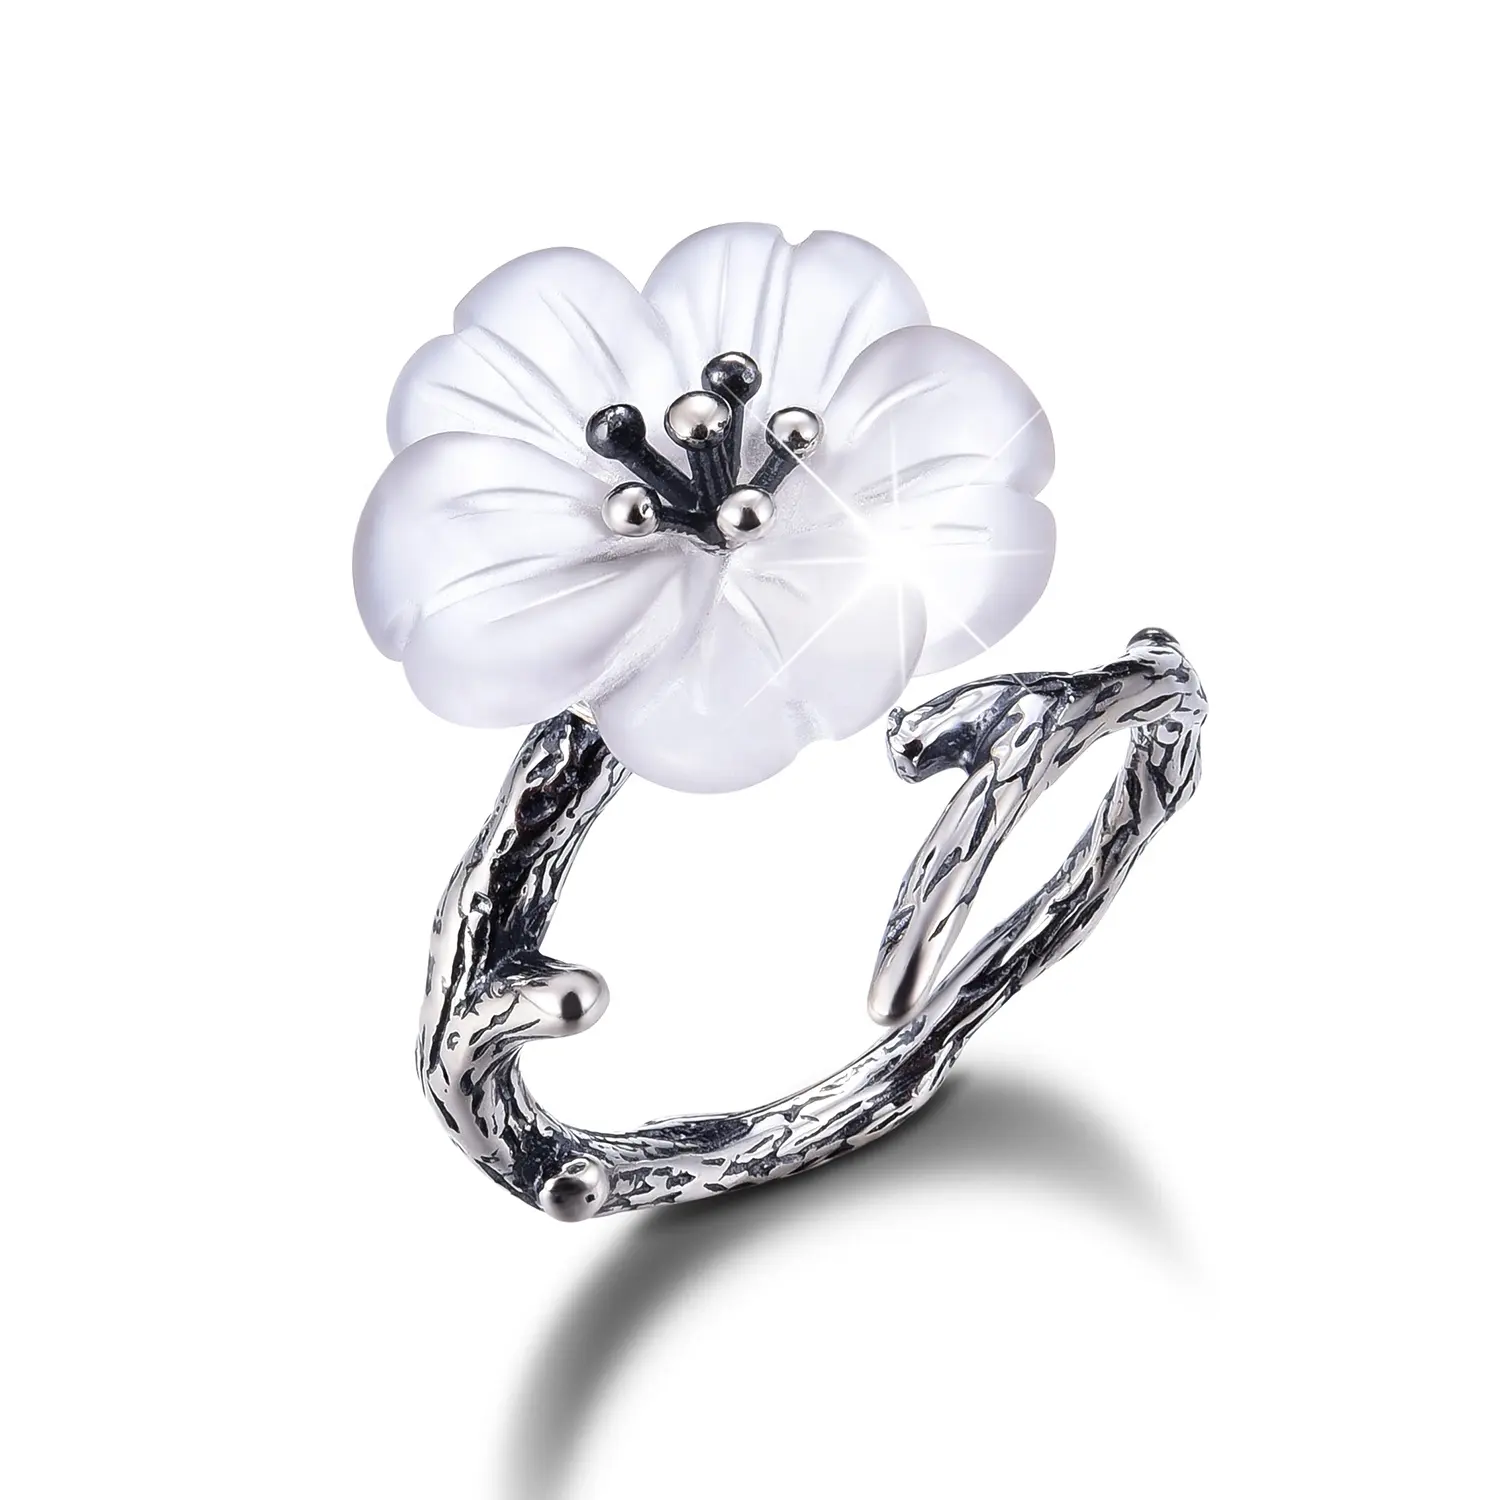 Handgemaakte bloem vormige zilveren sieraden ring